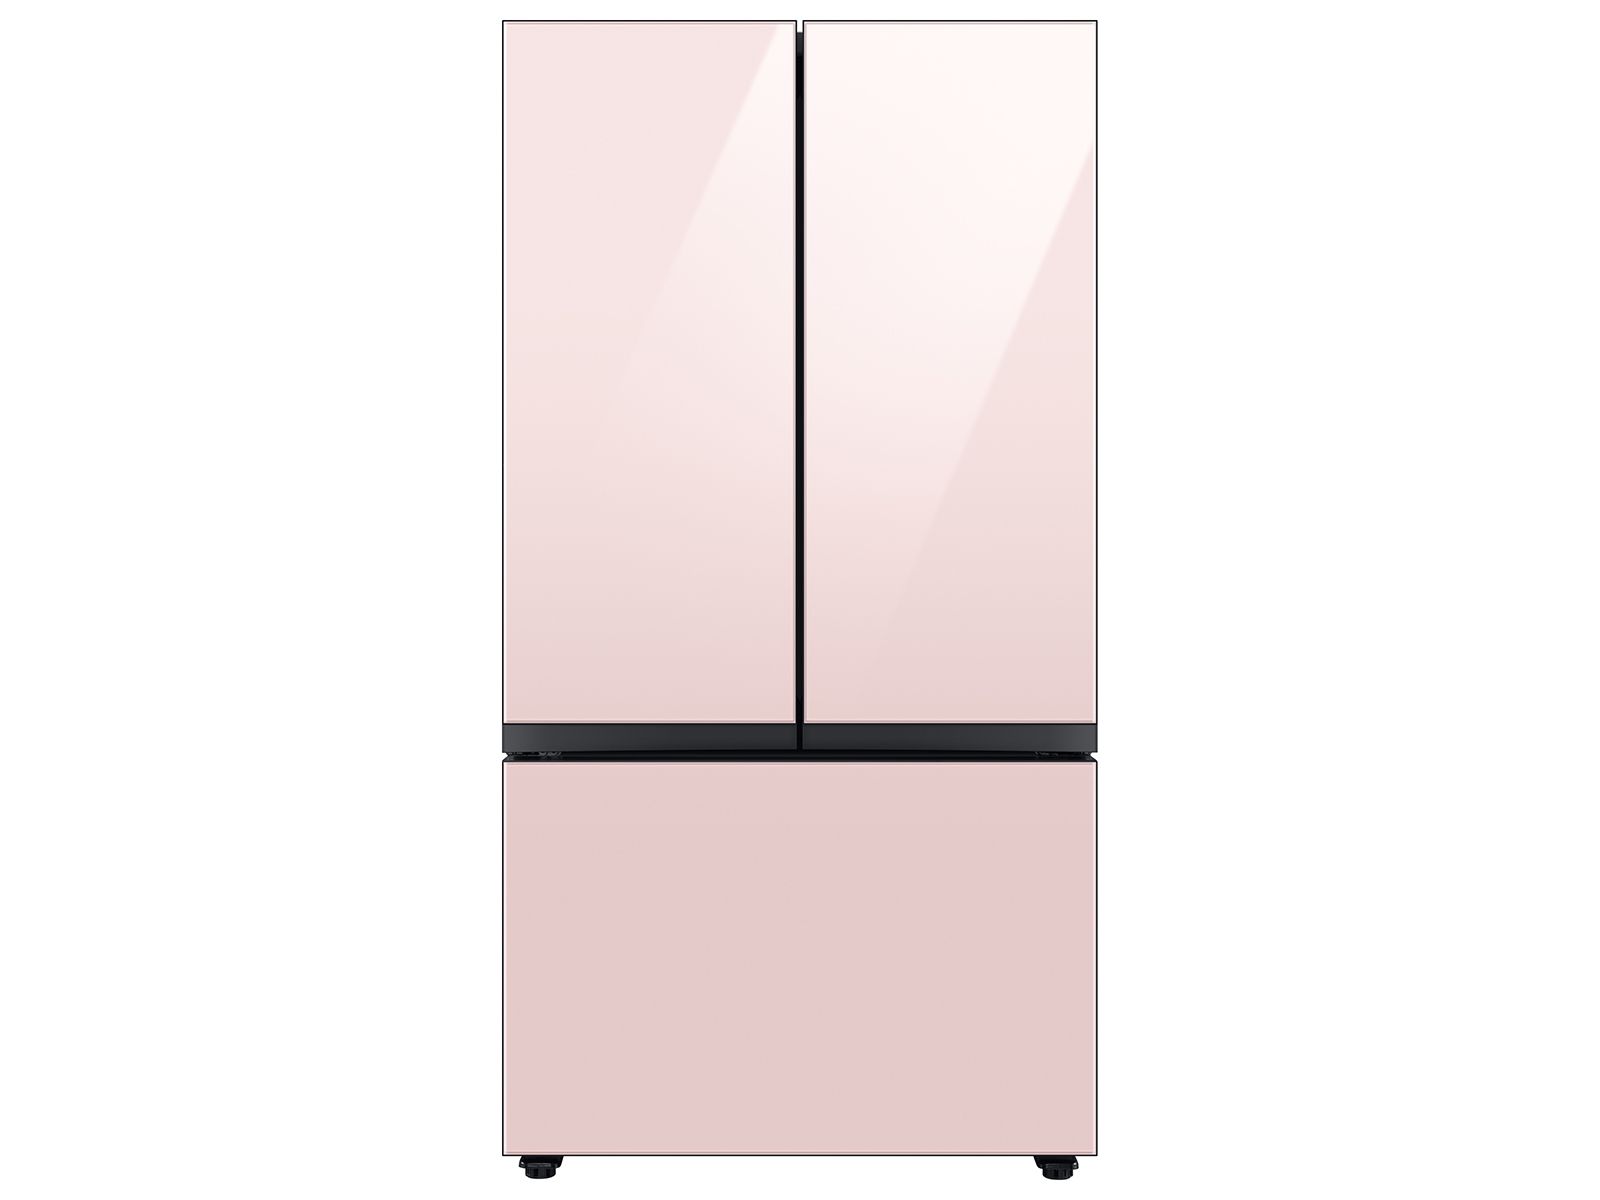 Bespoke 3-Door French Door Refrigerator (30 cu. ft.) with Beverage Center™ in Rose Pink Glass